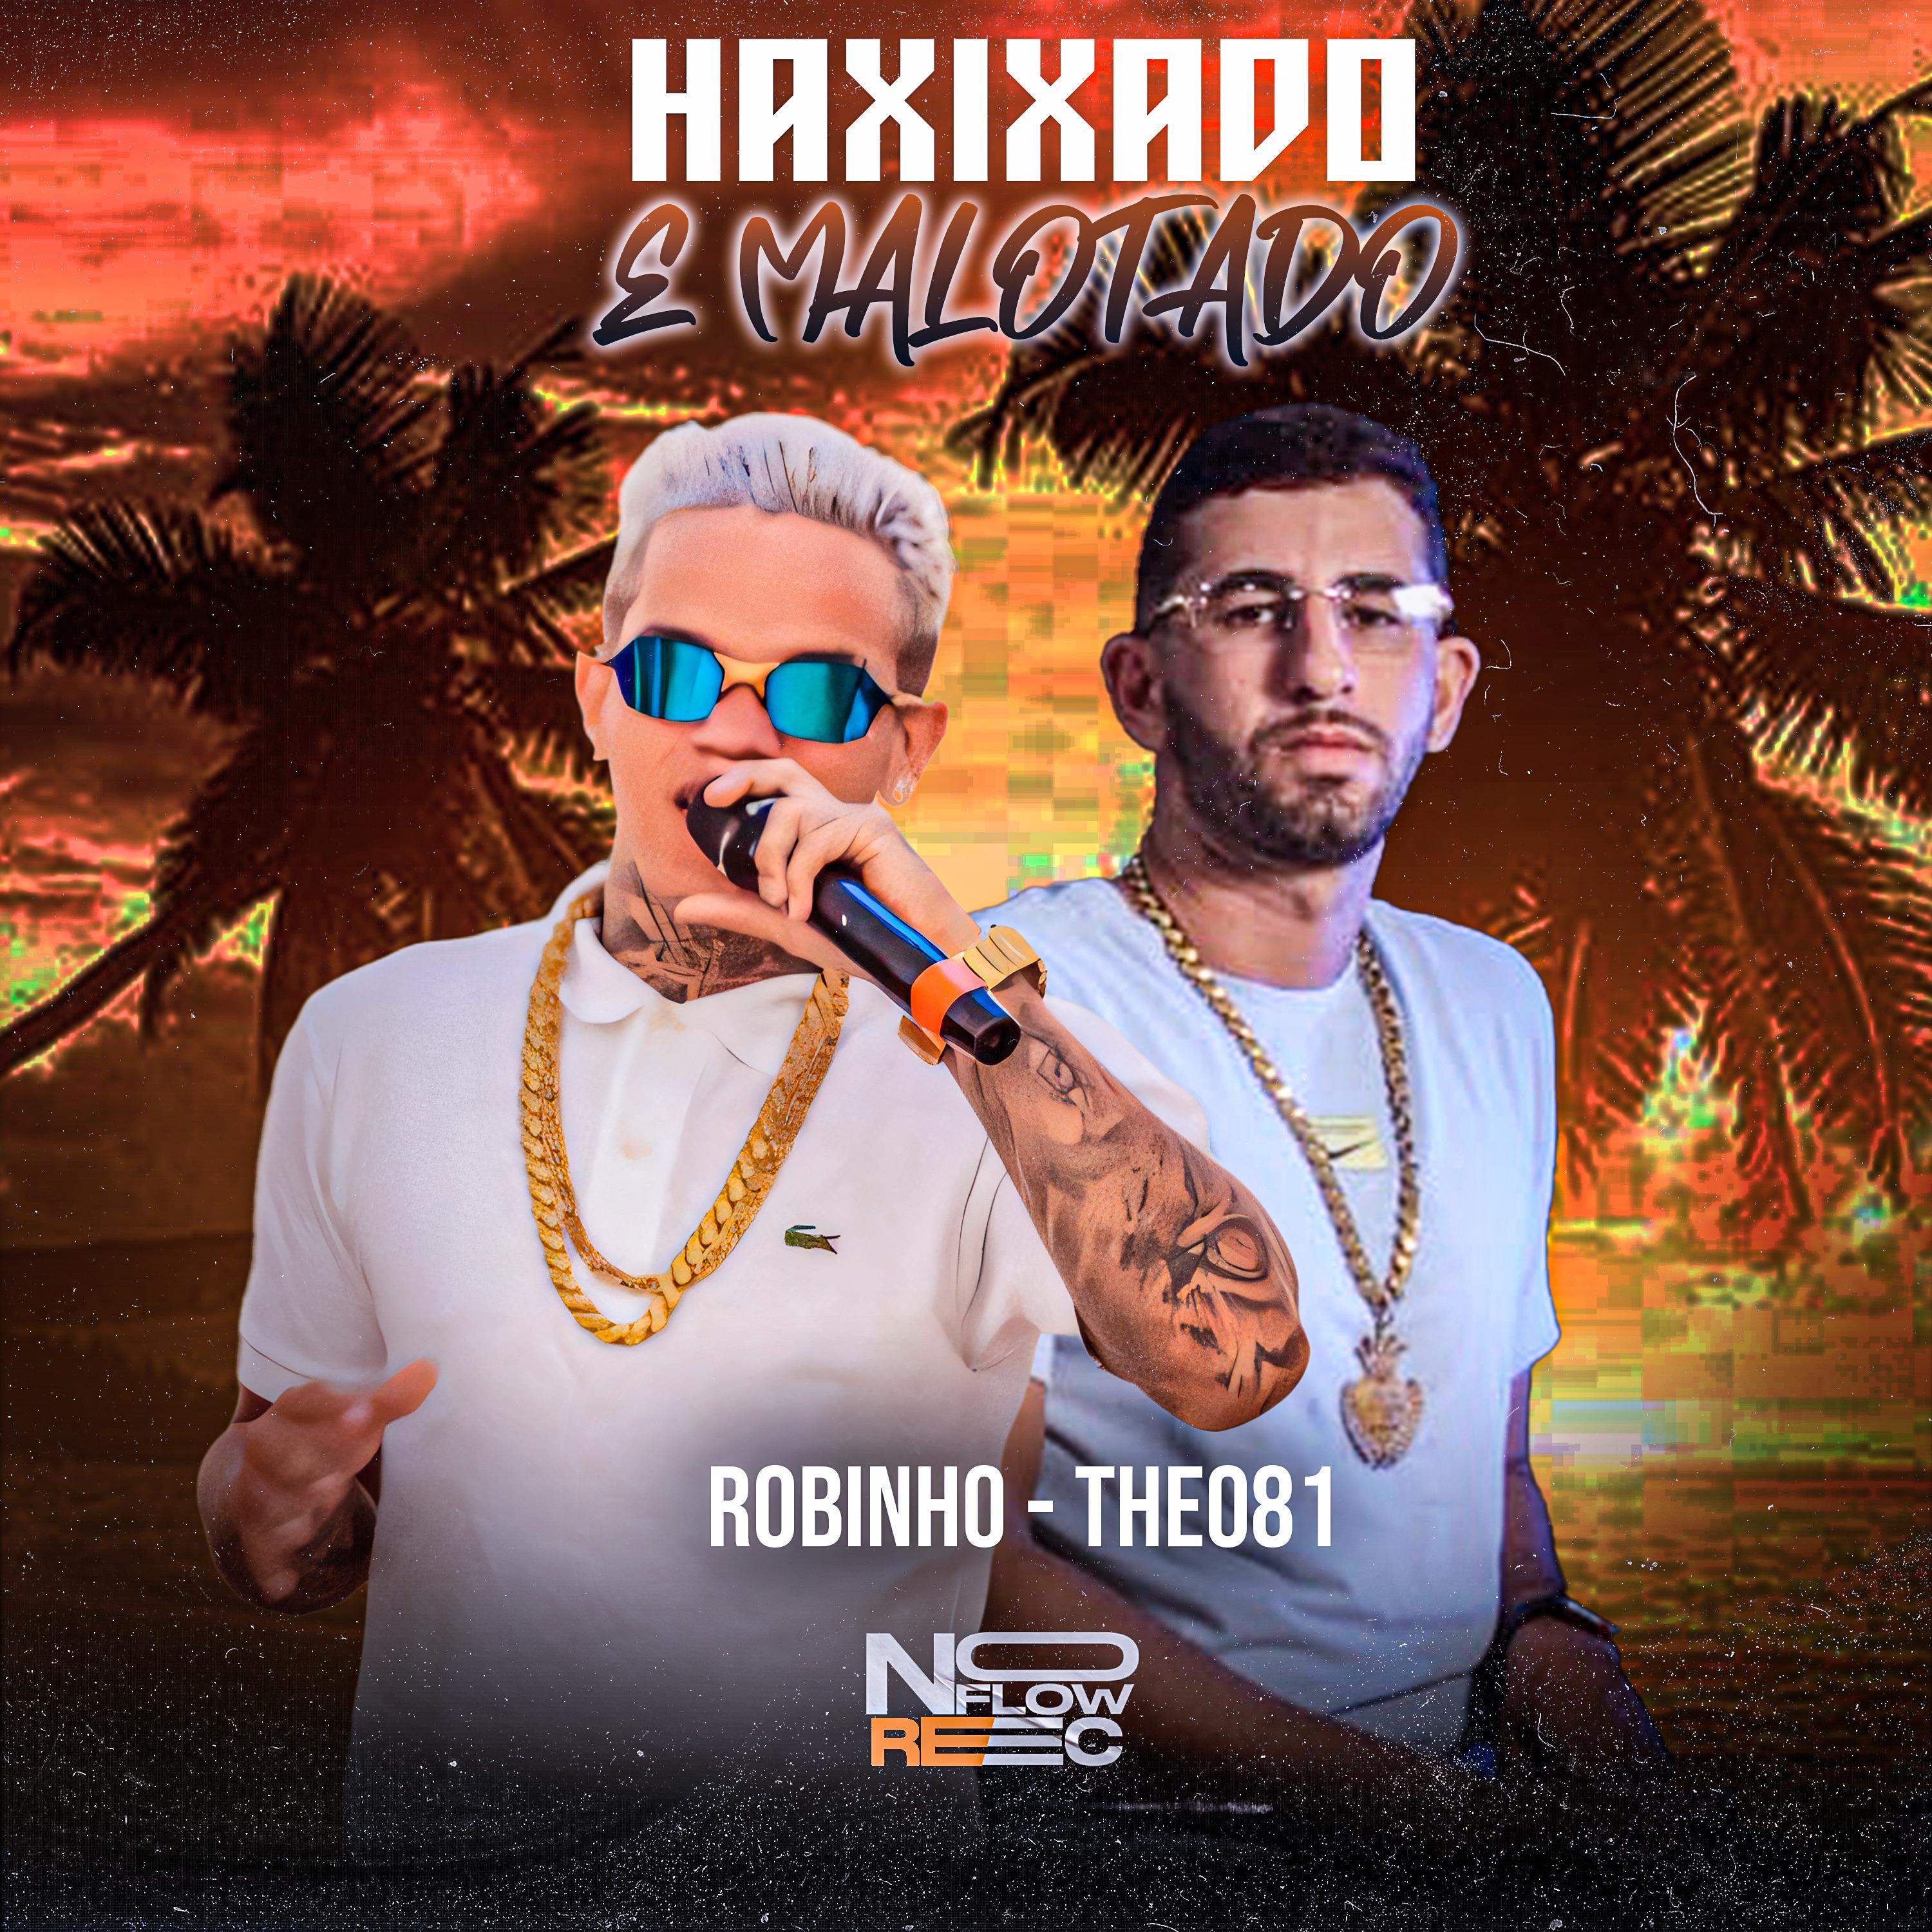 Постер альбома Haxixado e Malotado